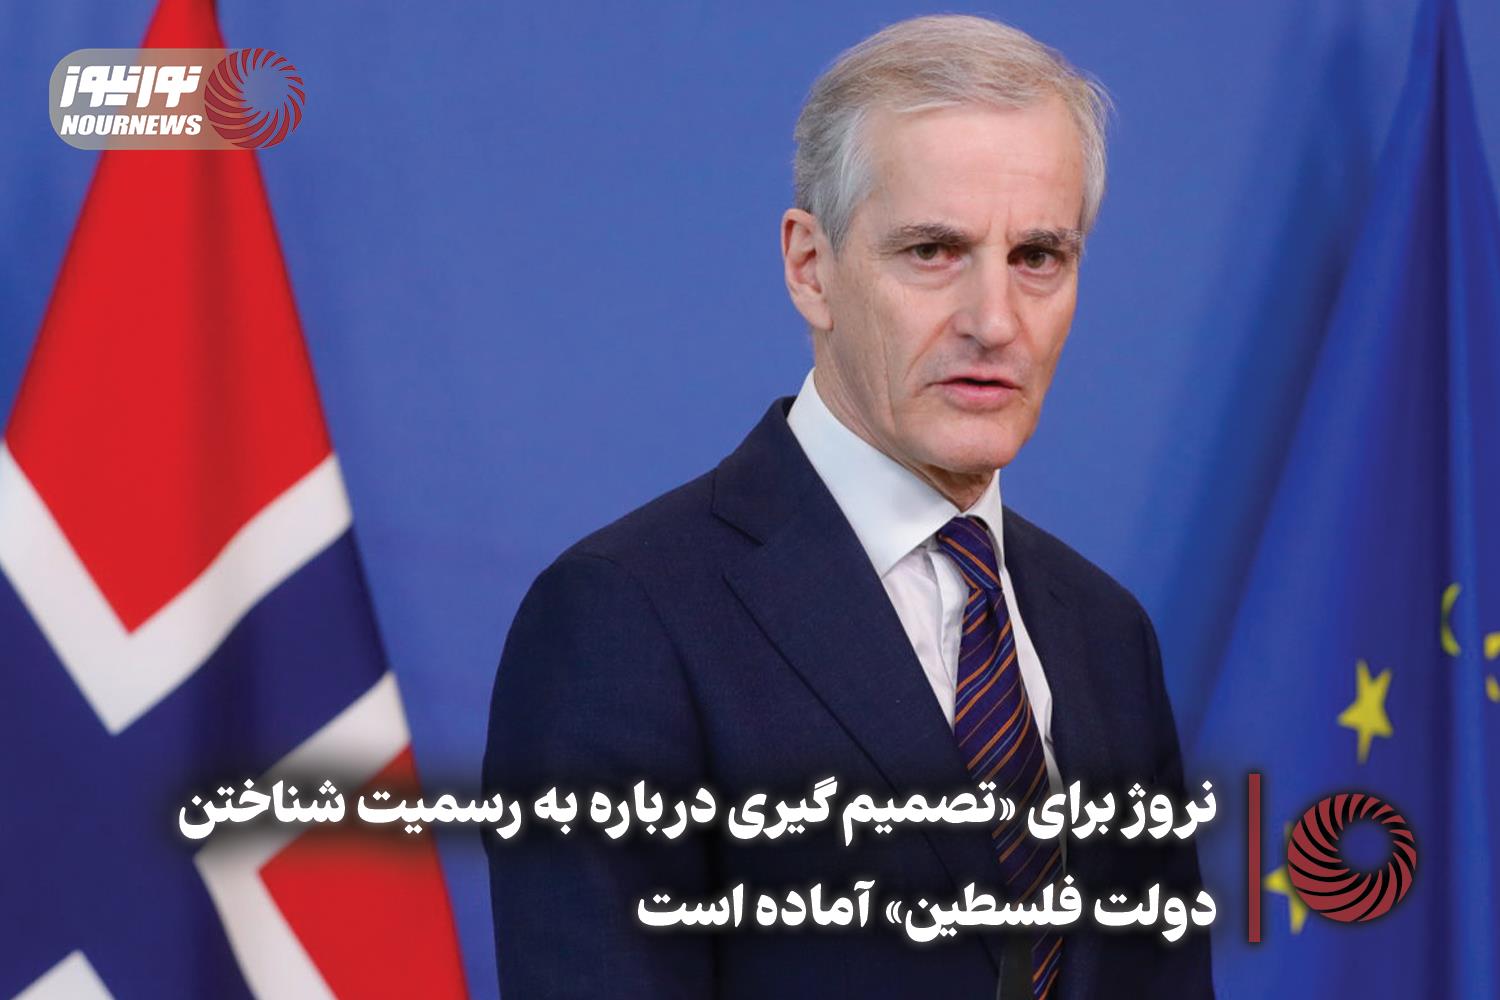 挪威准备“就承认巴勒斯坦国做出决定”。